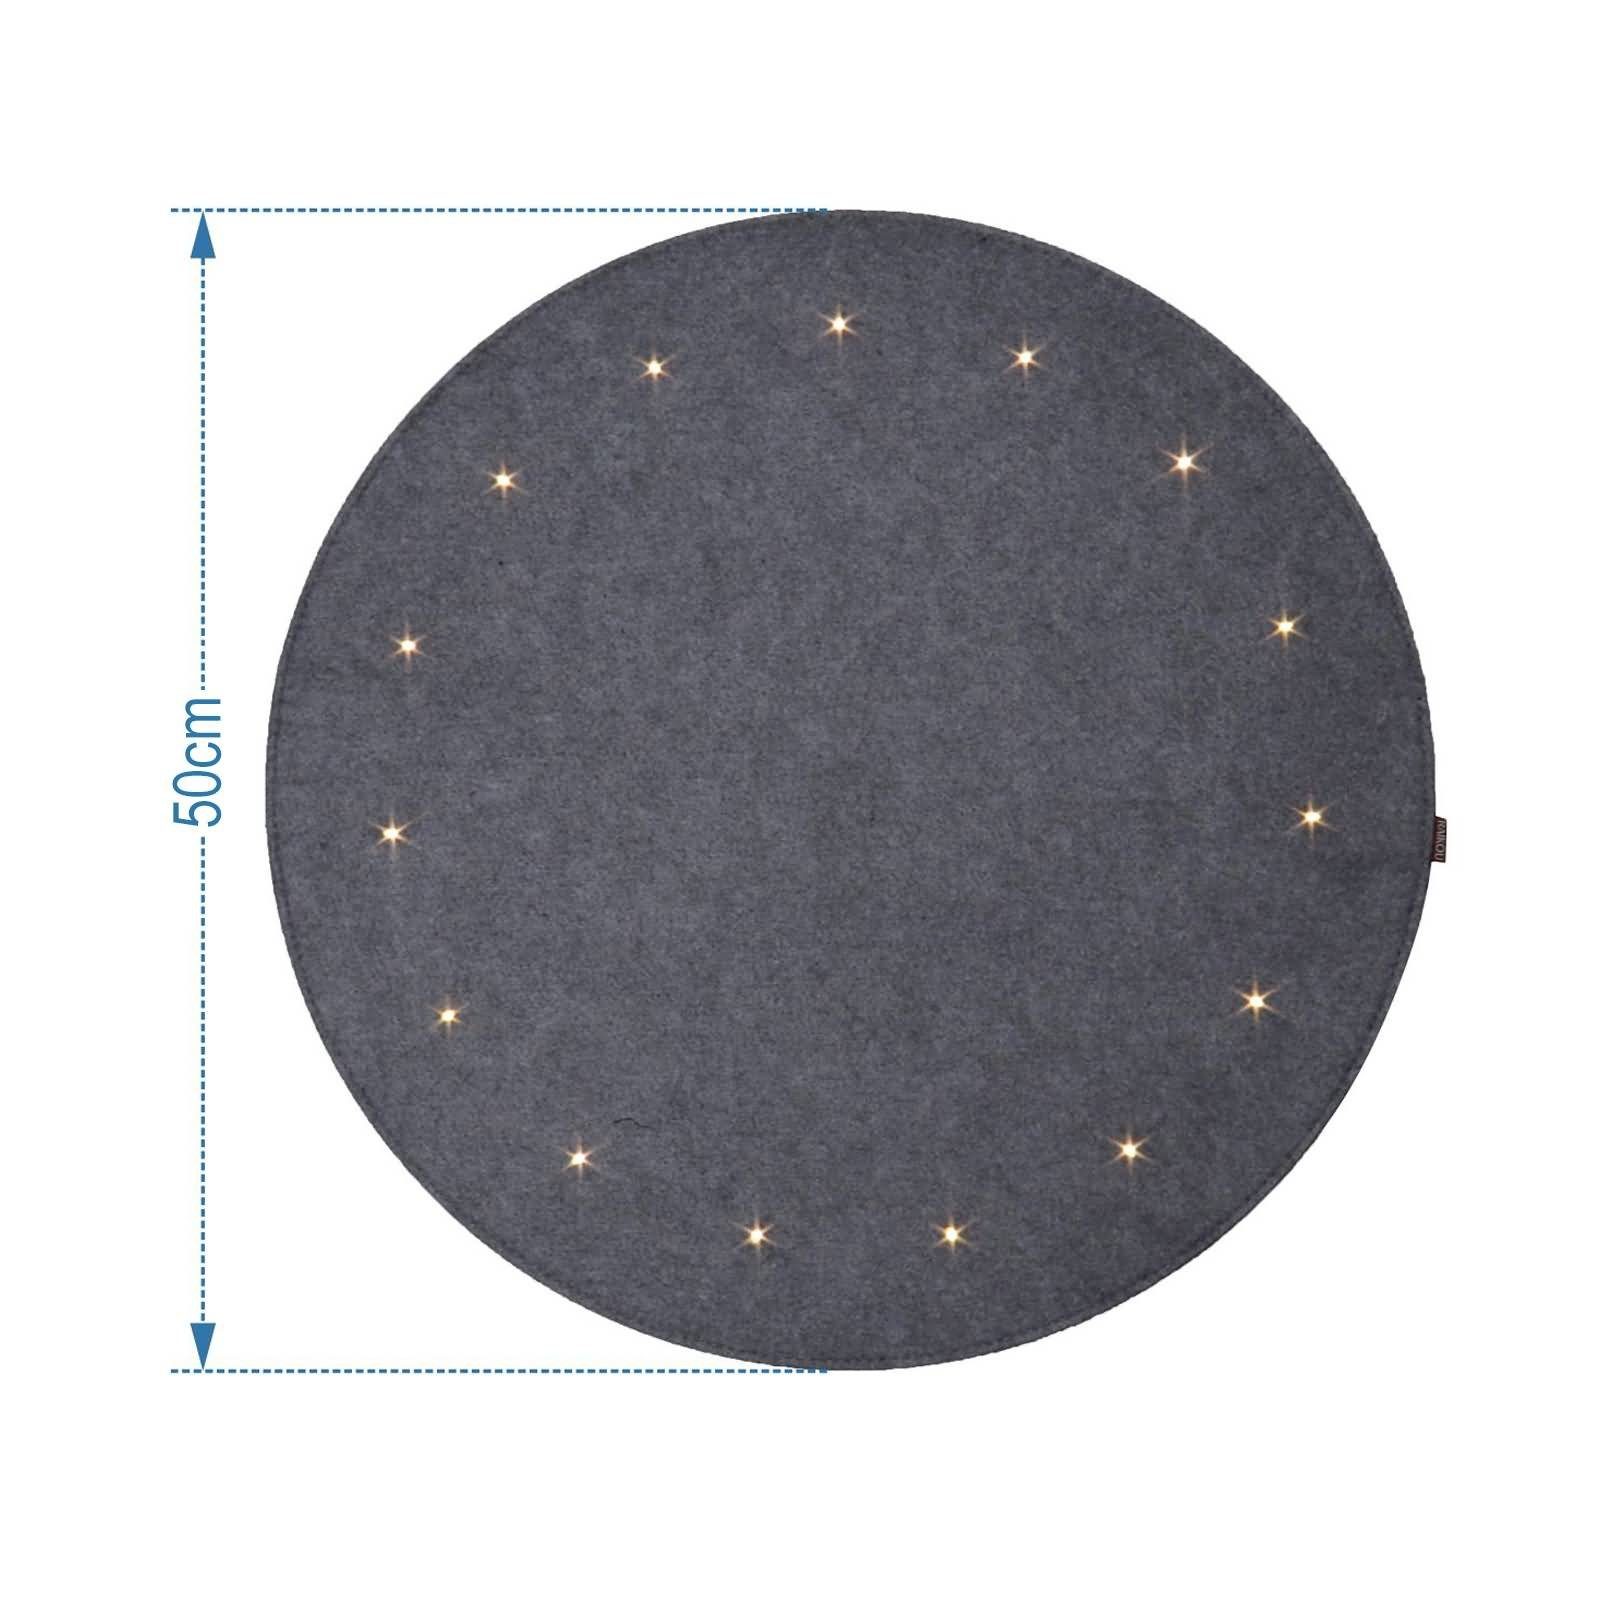 Teppich »LED Filzunterlage / Weihnachtsbaum Unterlage / Rund Christbaum  Teppich«, RAIKOU, Rund, Höhe 0.5 mm, 0,50cm Kreis 15 LEDs, 1 Kreis von 30  LEDs, 3 Kreise von 75 LEDs online kaufen | OTTO